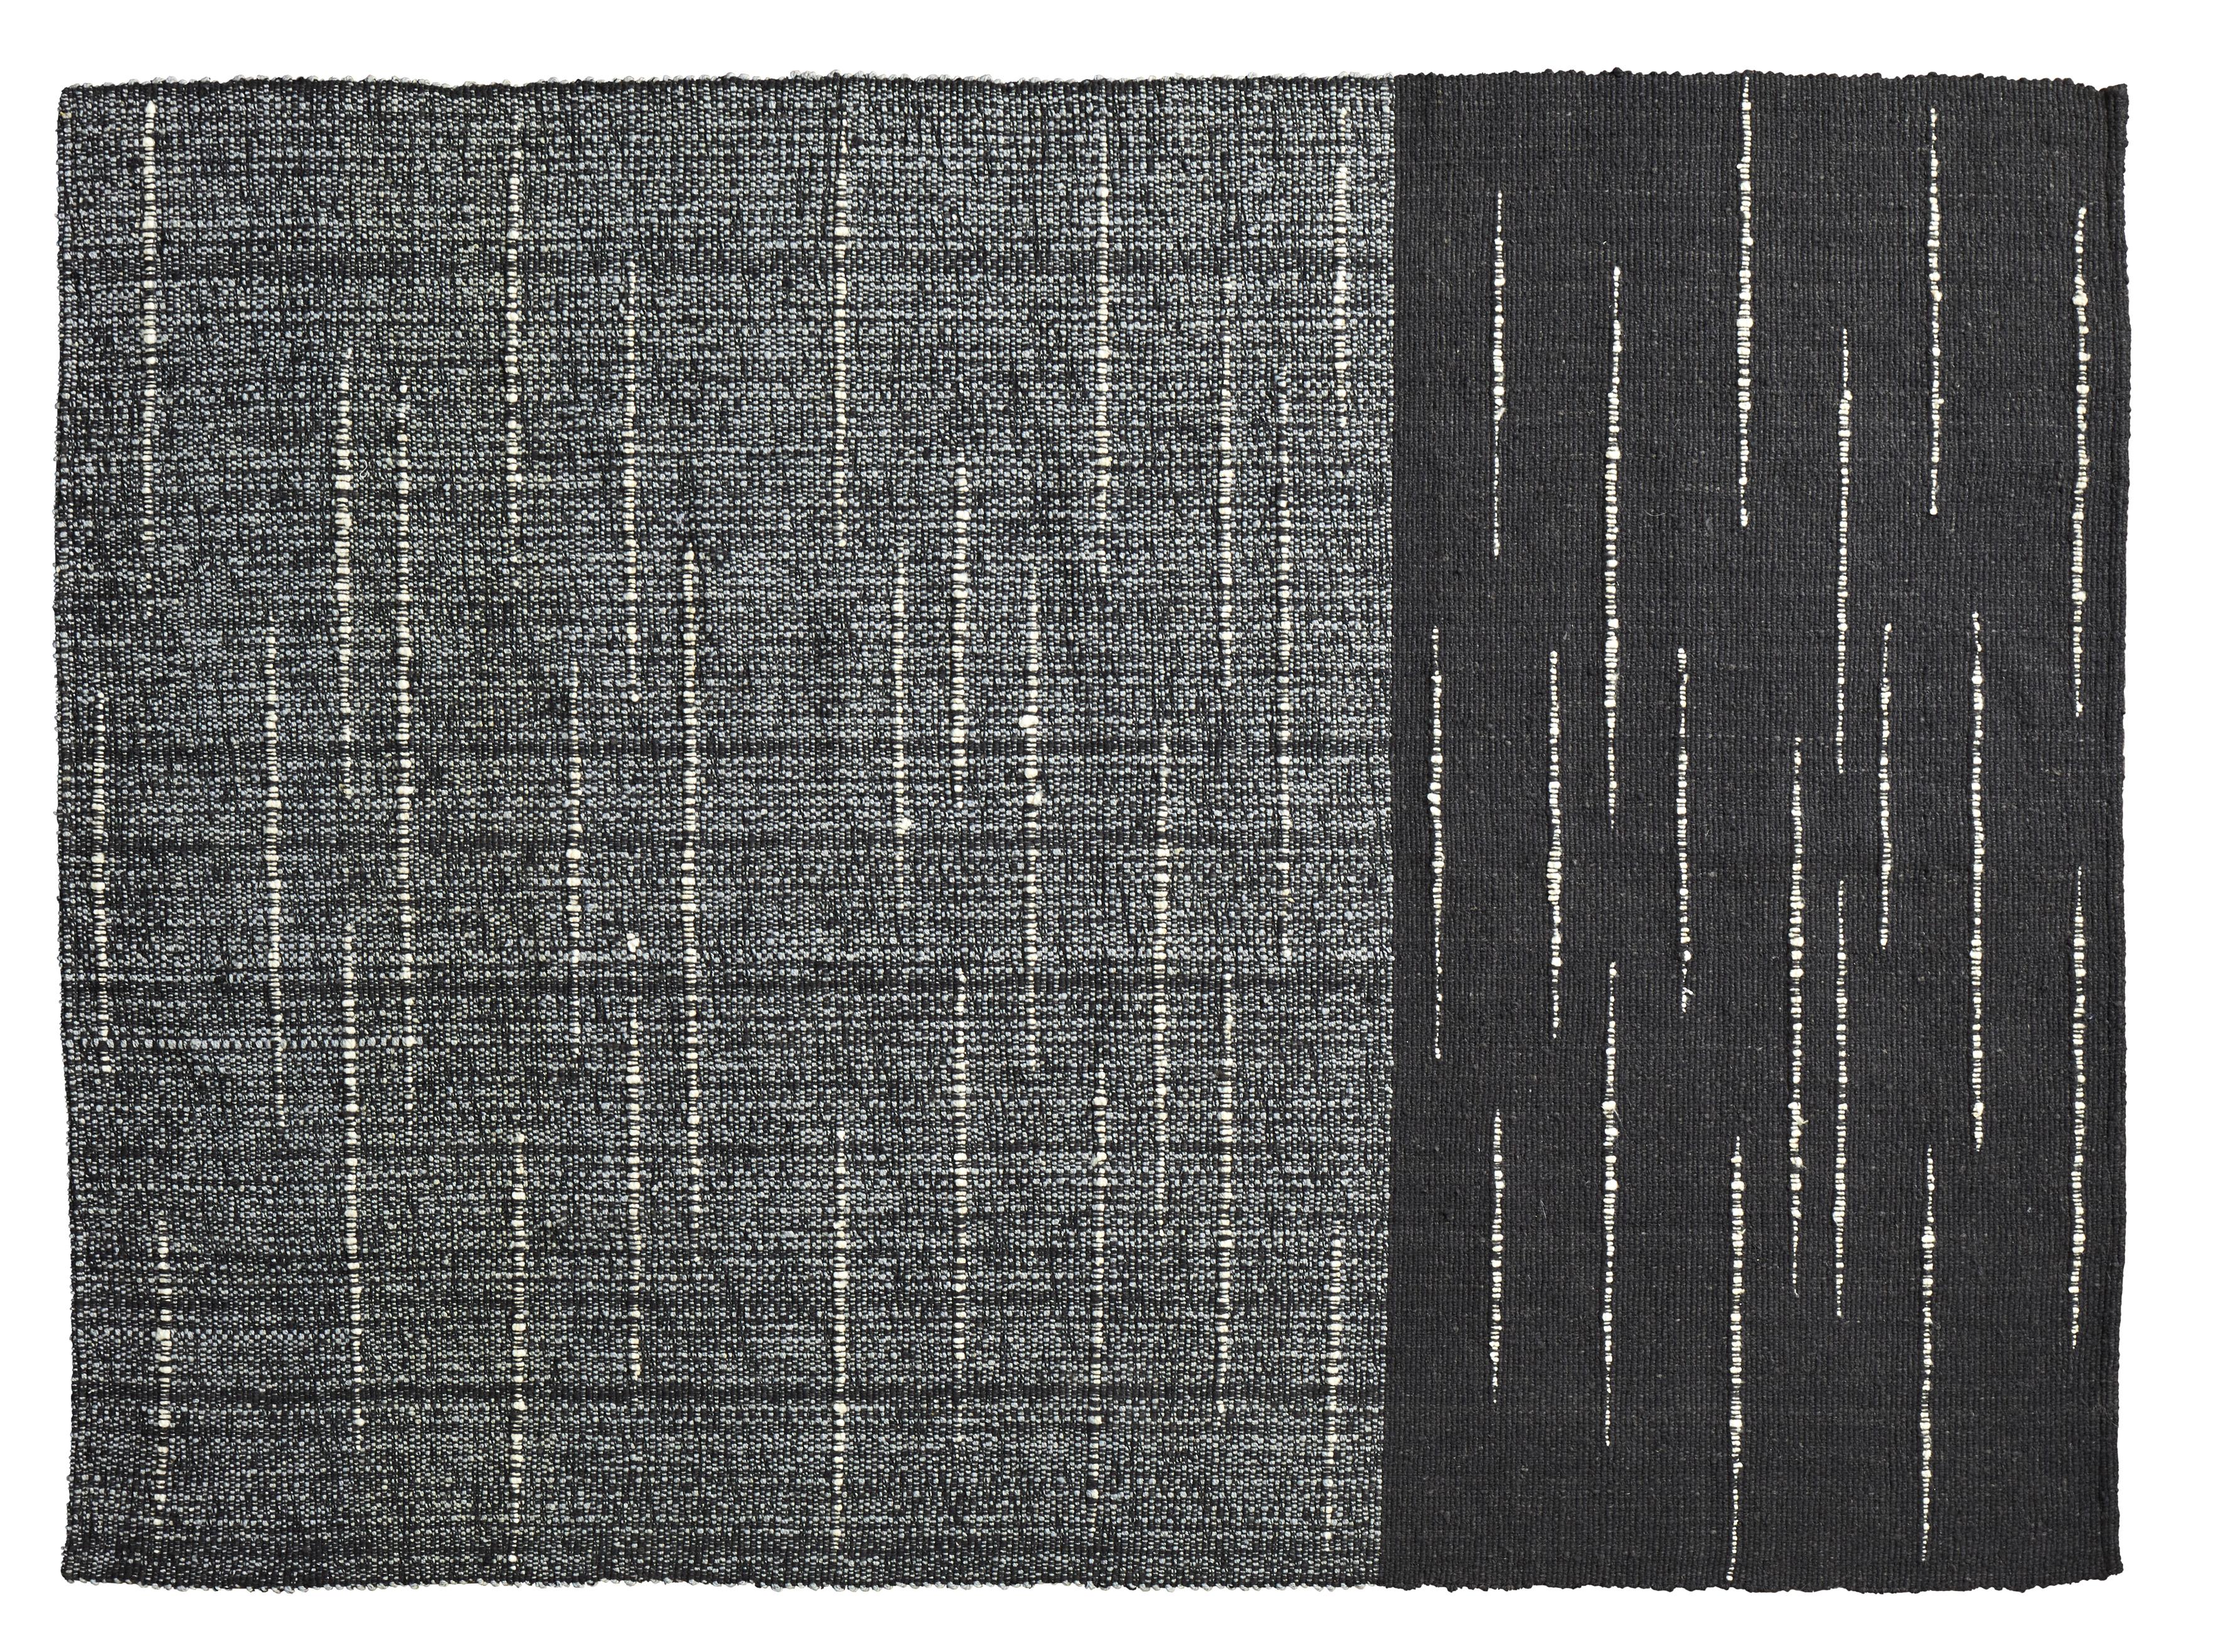 Kleiner Oruga Subas-Teppich von Sebastian Herkner
MATERIALIEN: 100% natürliche Schurwolle. 
Technik: Natürlich gefärbte Fasern. Handgewebt in Kolumbien.
Abmessungen: B 160 x L 220 cm 
Erhältlich in den Farben: karo, linea 1, linea 2, moton,